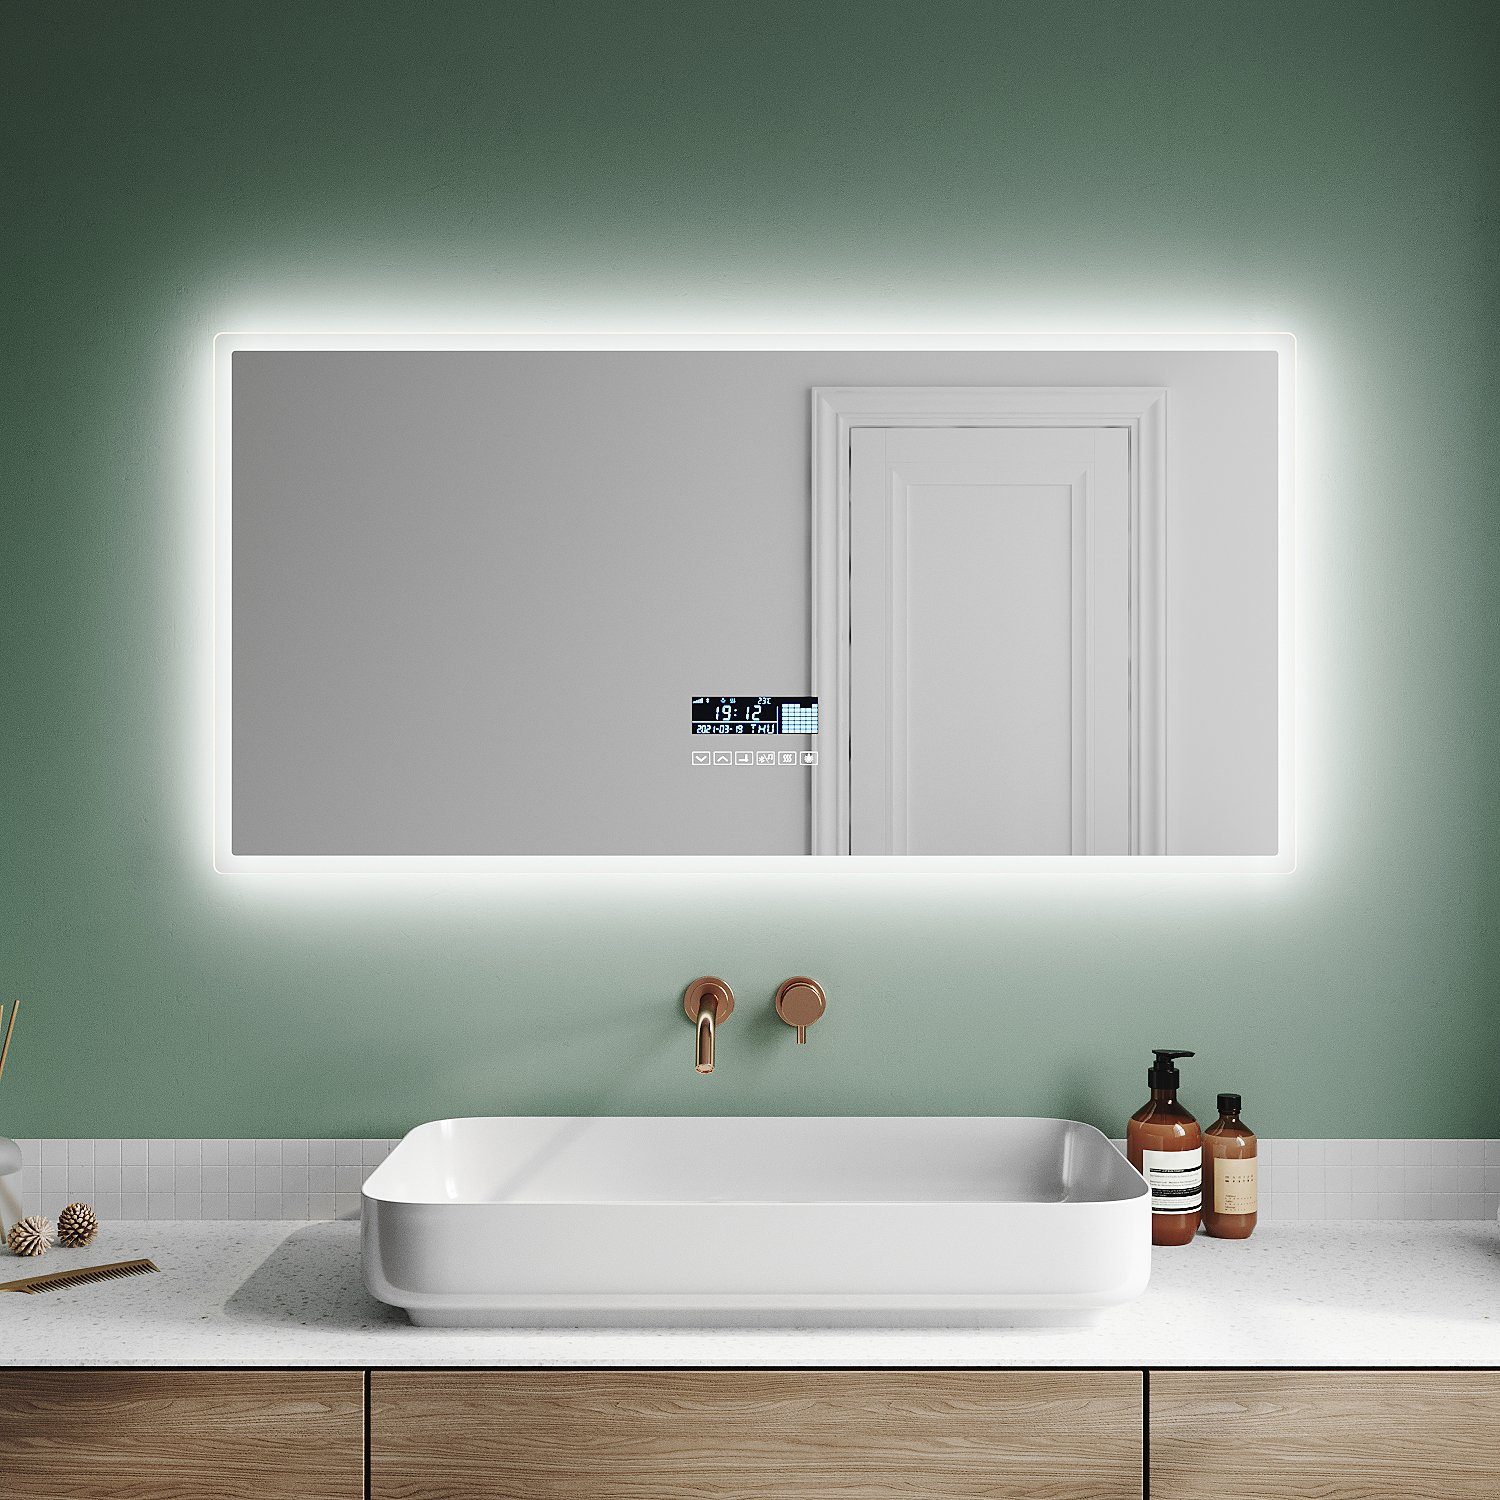 SONNI Badspiegel Bad Spiegel mit Beleuchtung, mit/ohne  Bluetooth-Lautsprecher, 120 x 60, Anti-Beschlag-Funktion, Beschlagfrei, Lichtspiegel, IP44